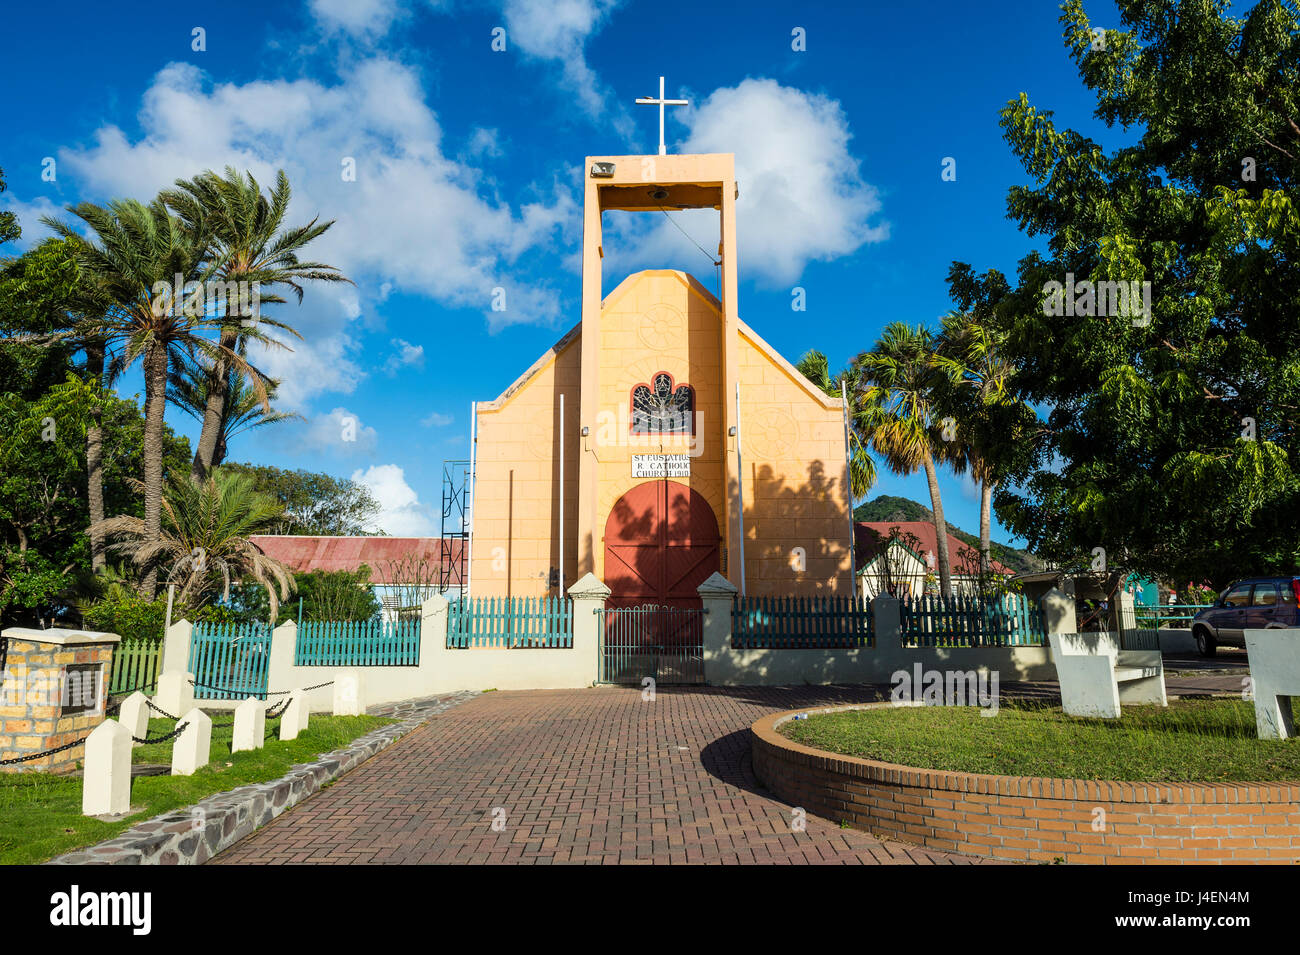 Église, Oranjestad, dans la capitale de Saint-Eustache, Statia, Netherland Antilles, Antilles, Caraïbes, Amérique Centrale Banque D'Images